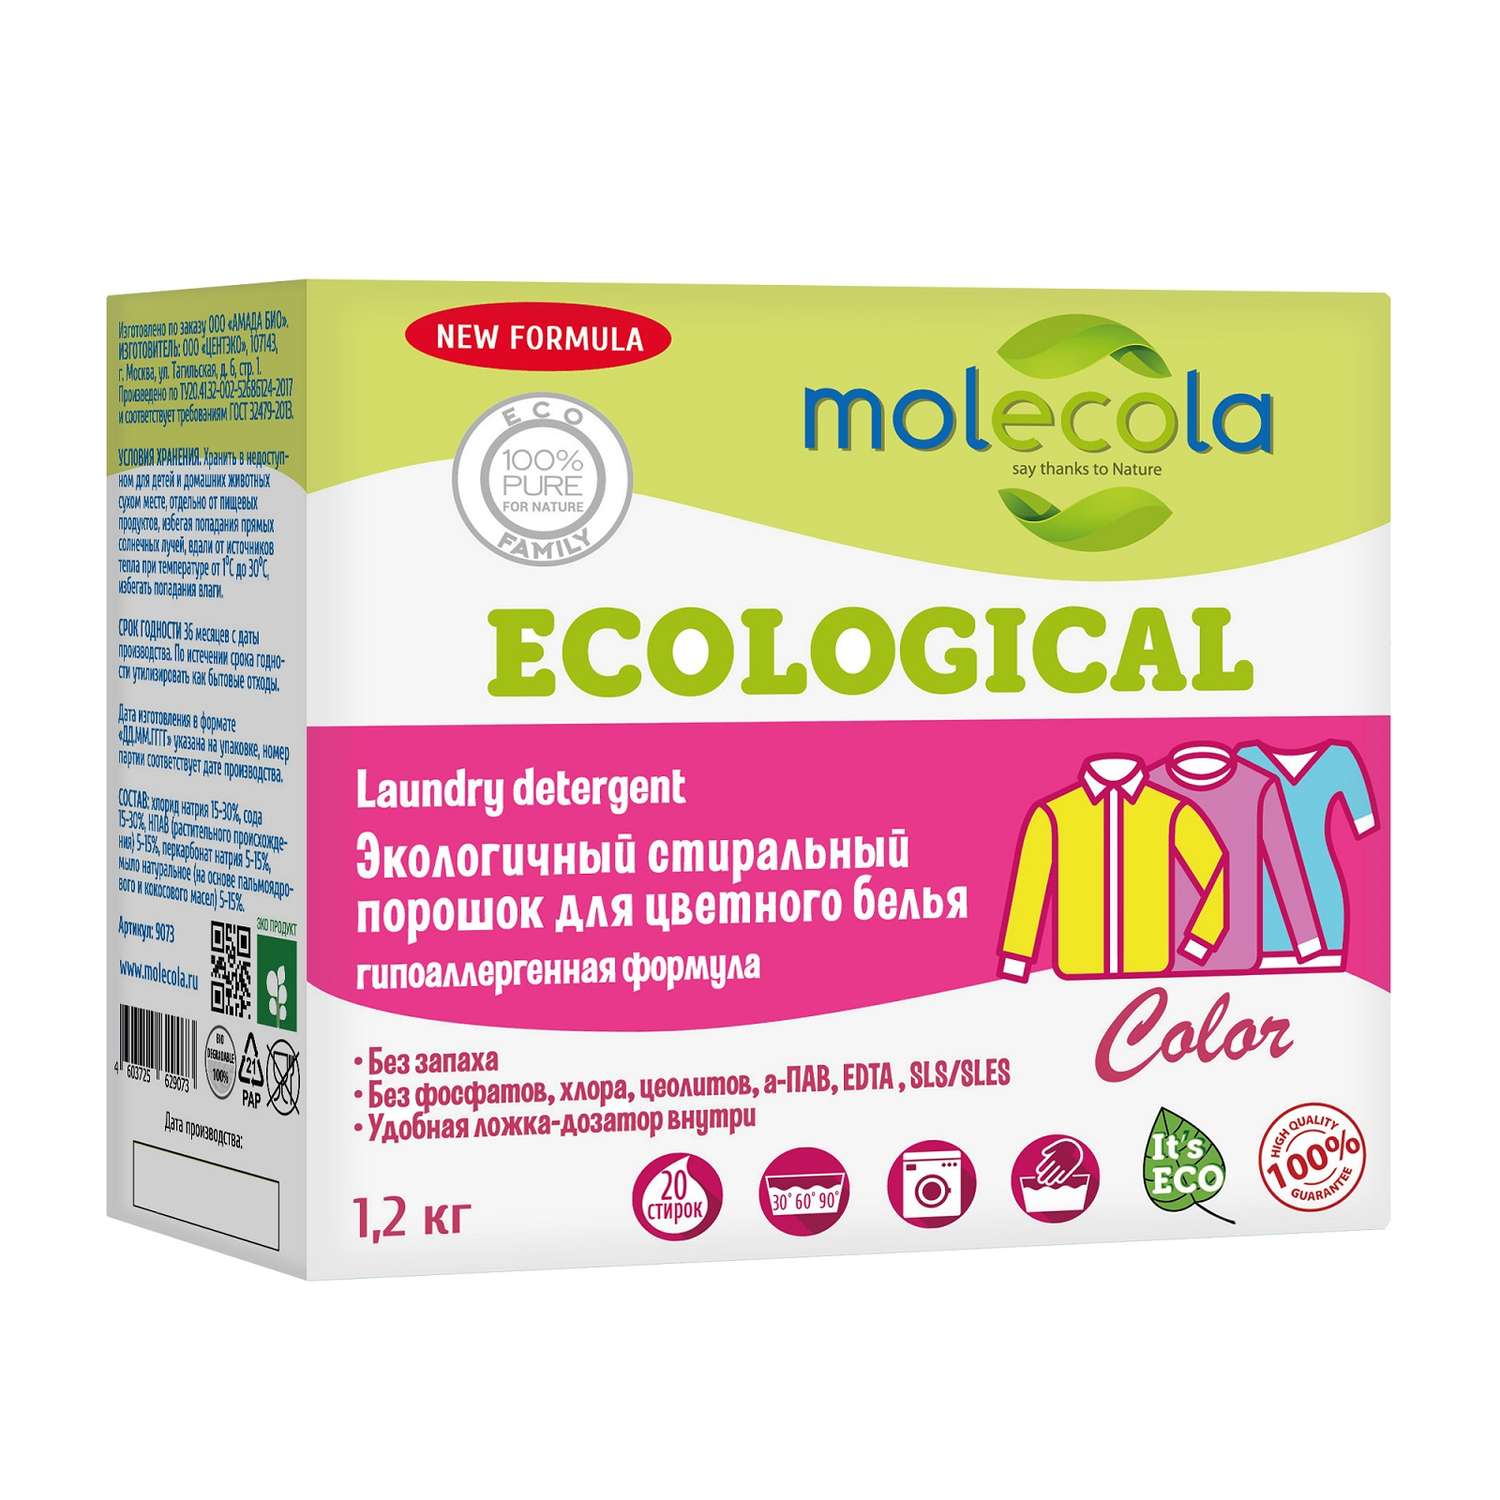 Стиральный порошок Molecola с растительными энзимами для цветного белья 1.2кг - фото 1